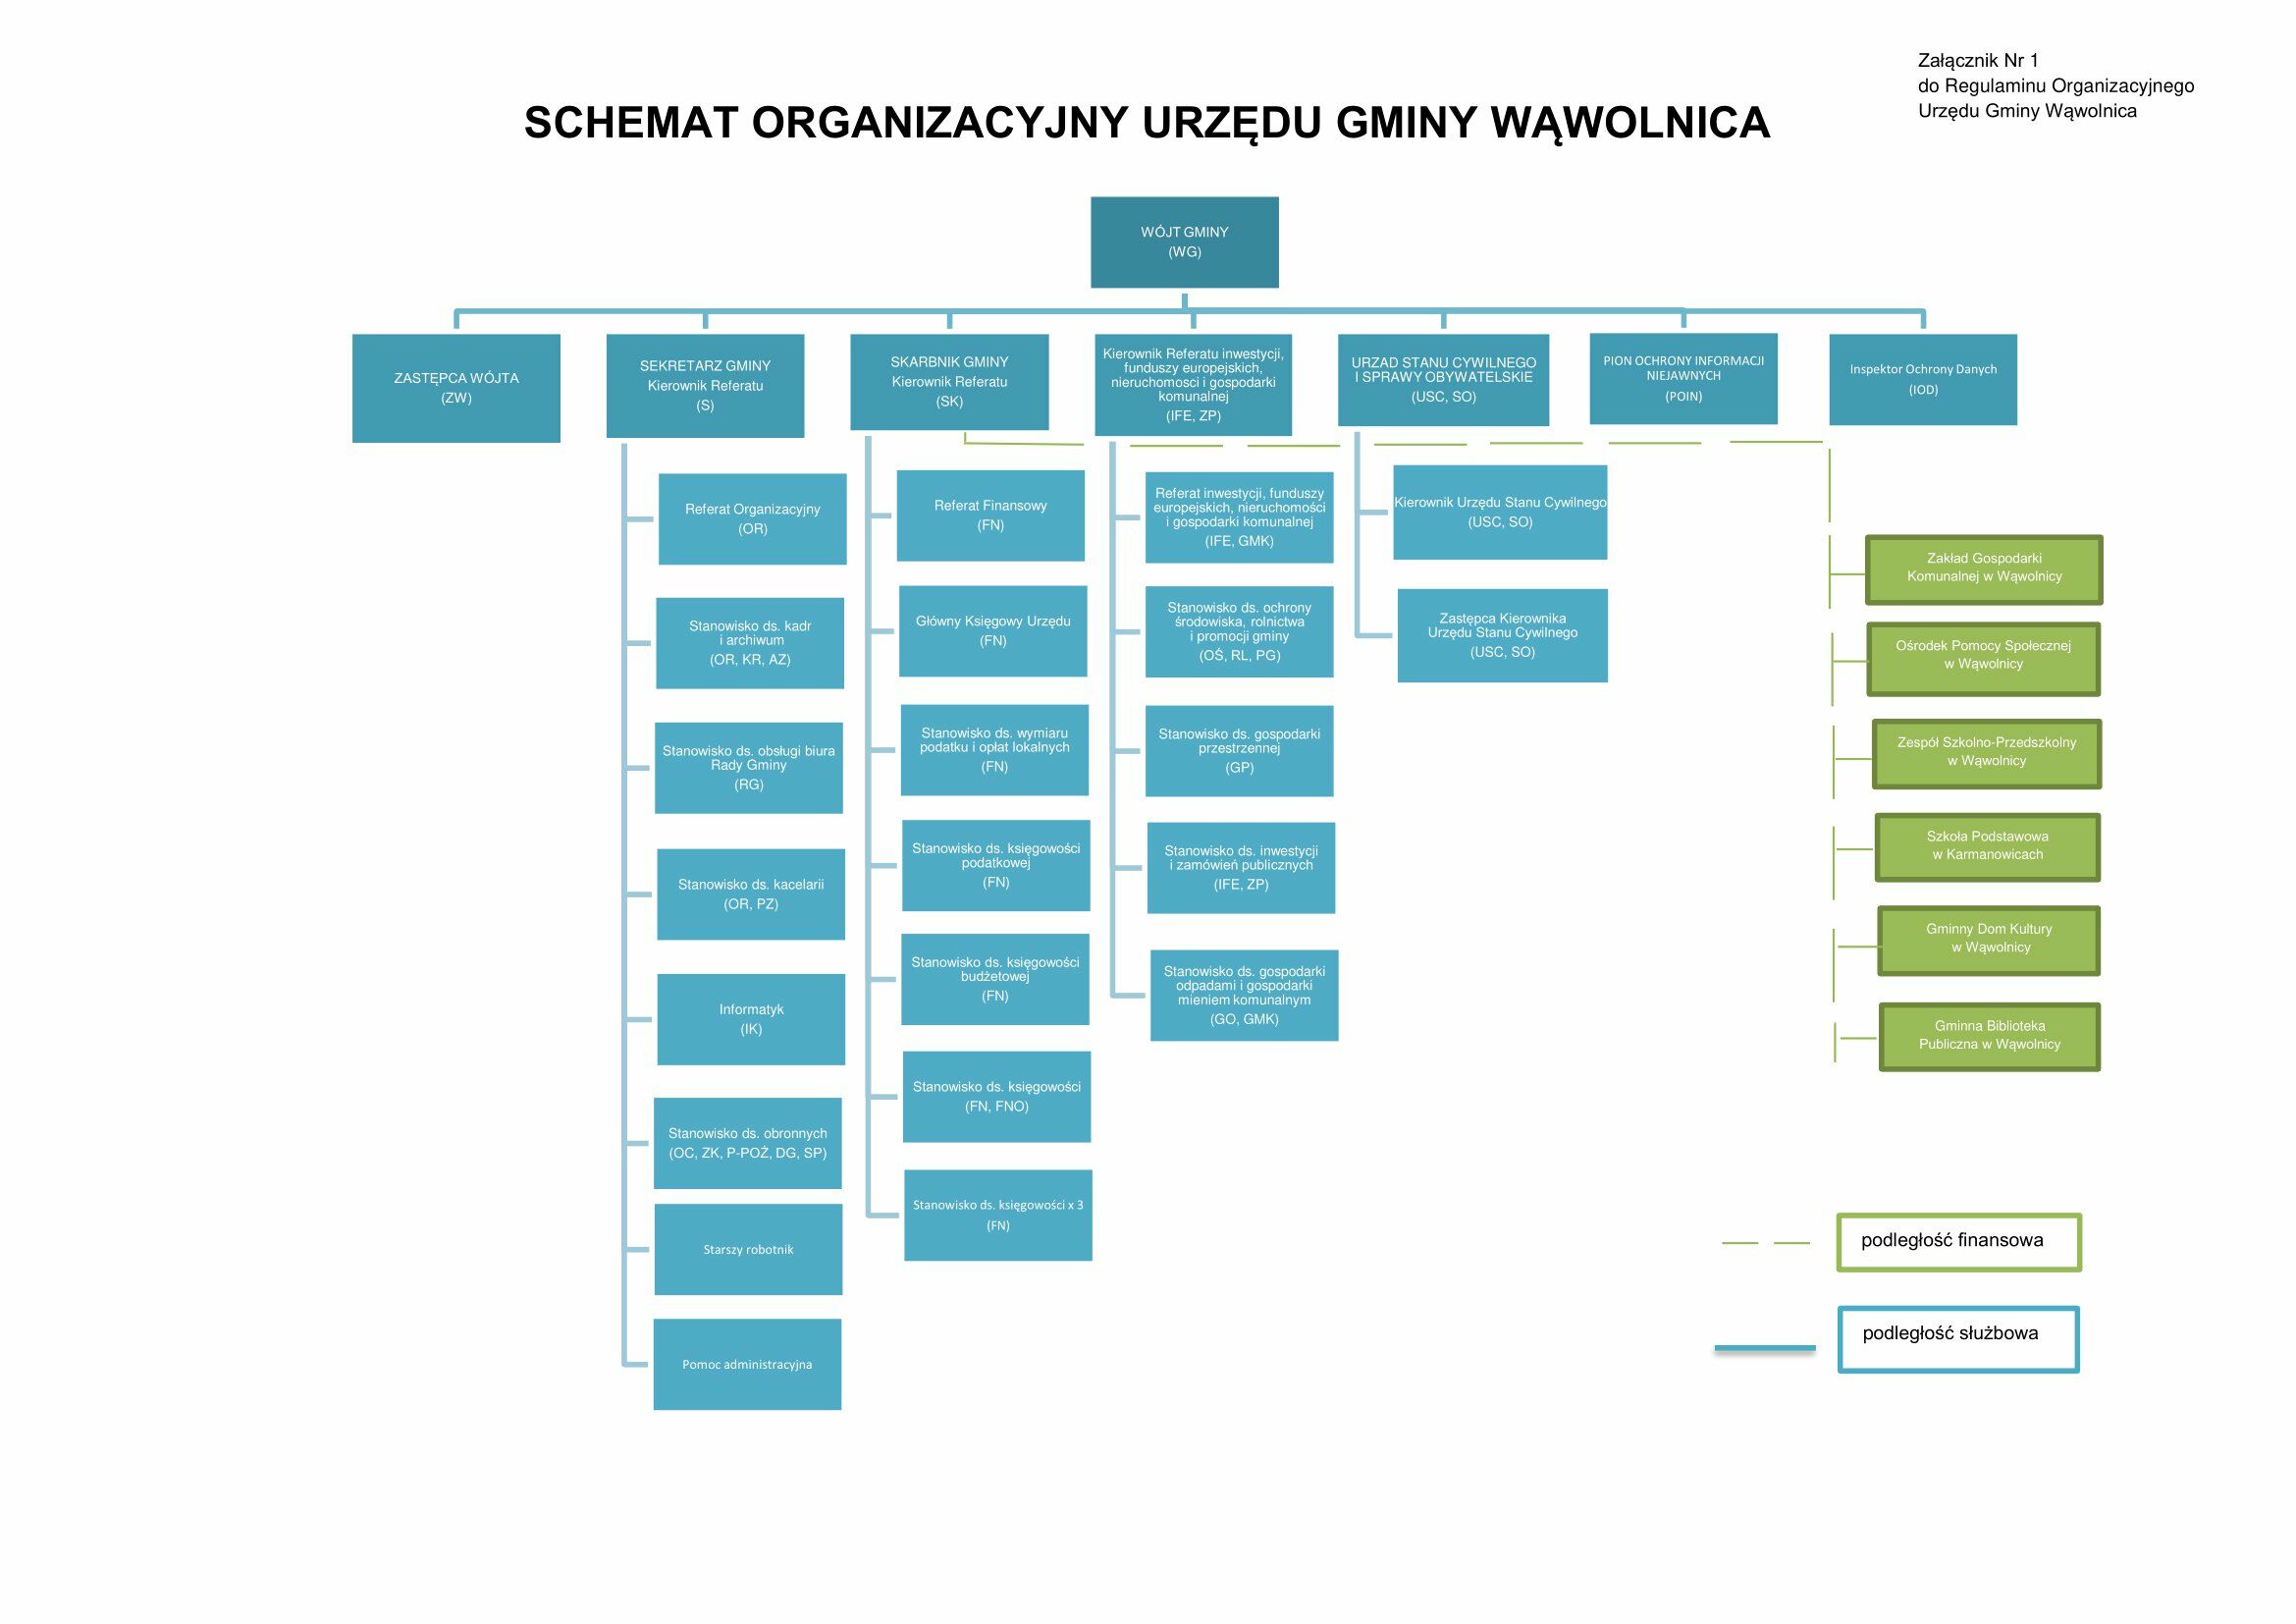 Schemat organizacyjny Urzędu Gminy Wawolnica przedstawiający hierarchię i podział na działy, np. Zarząd, Referat Organizacyjny, itp., z liniami wskazującymi relacje i podległości.